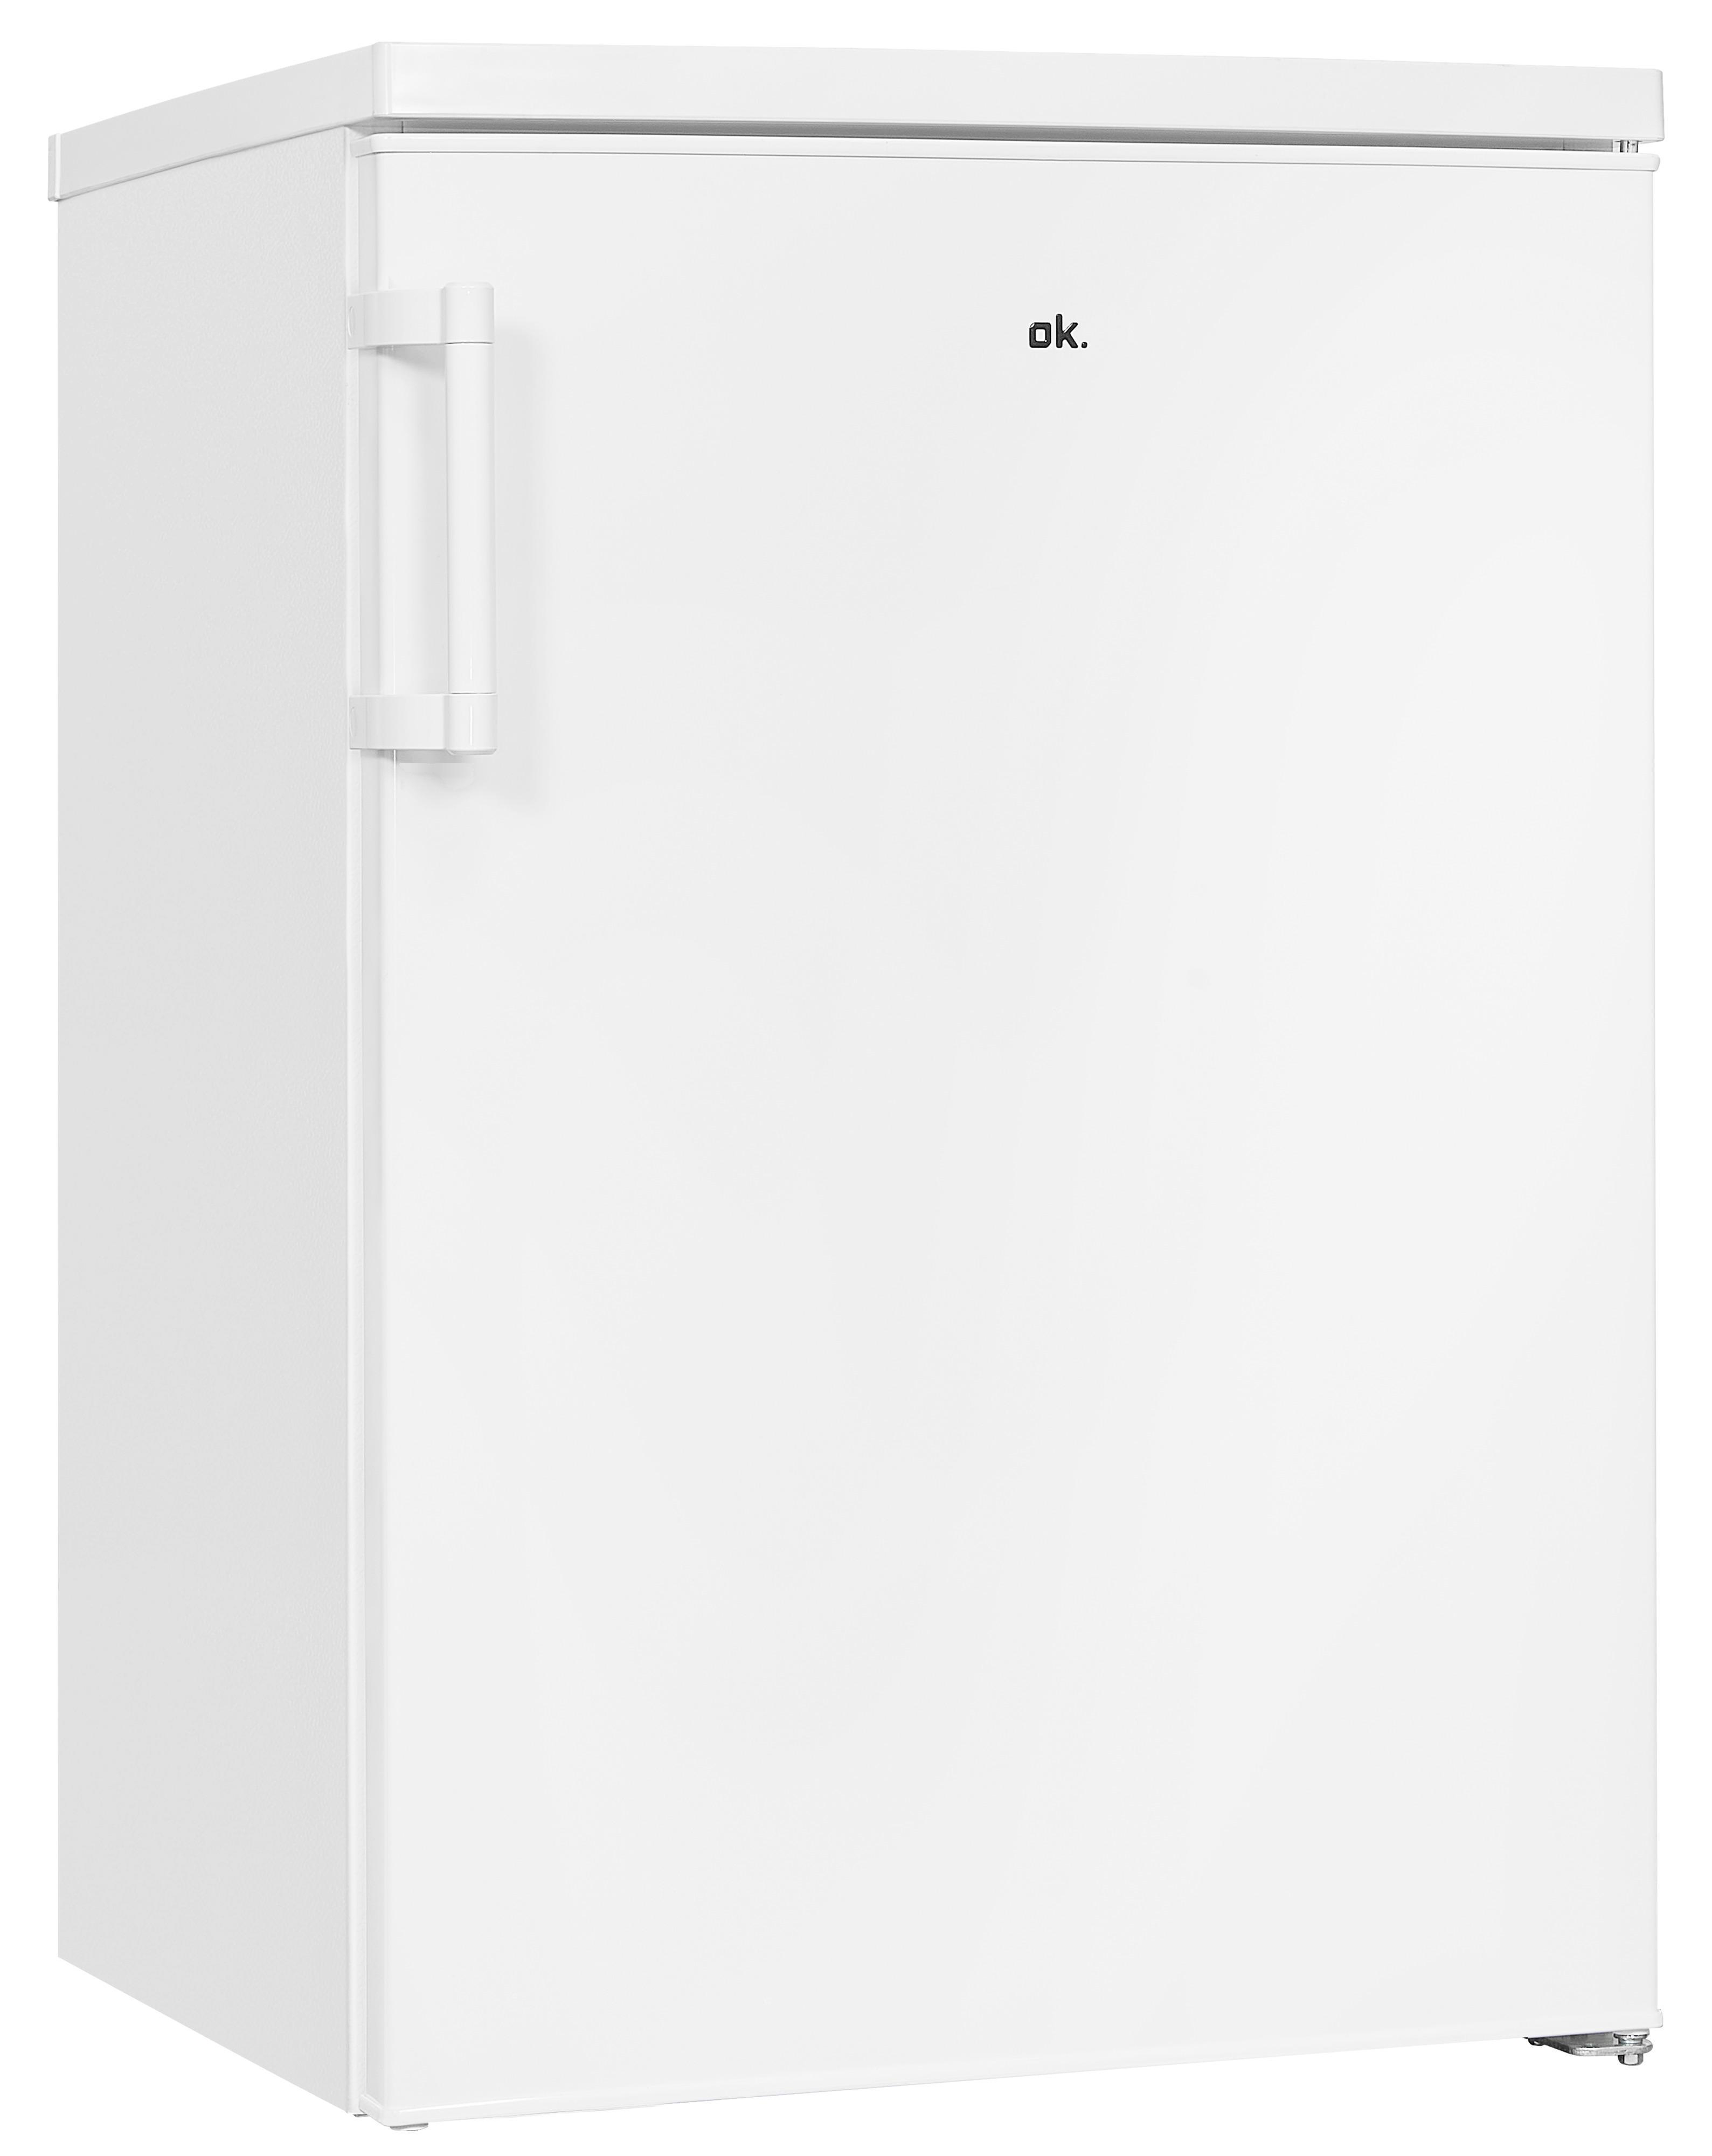 121 mm hoch, D 845 OFK Gefrierfach Kühlschrank (D, Weiß) OK. mit